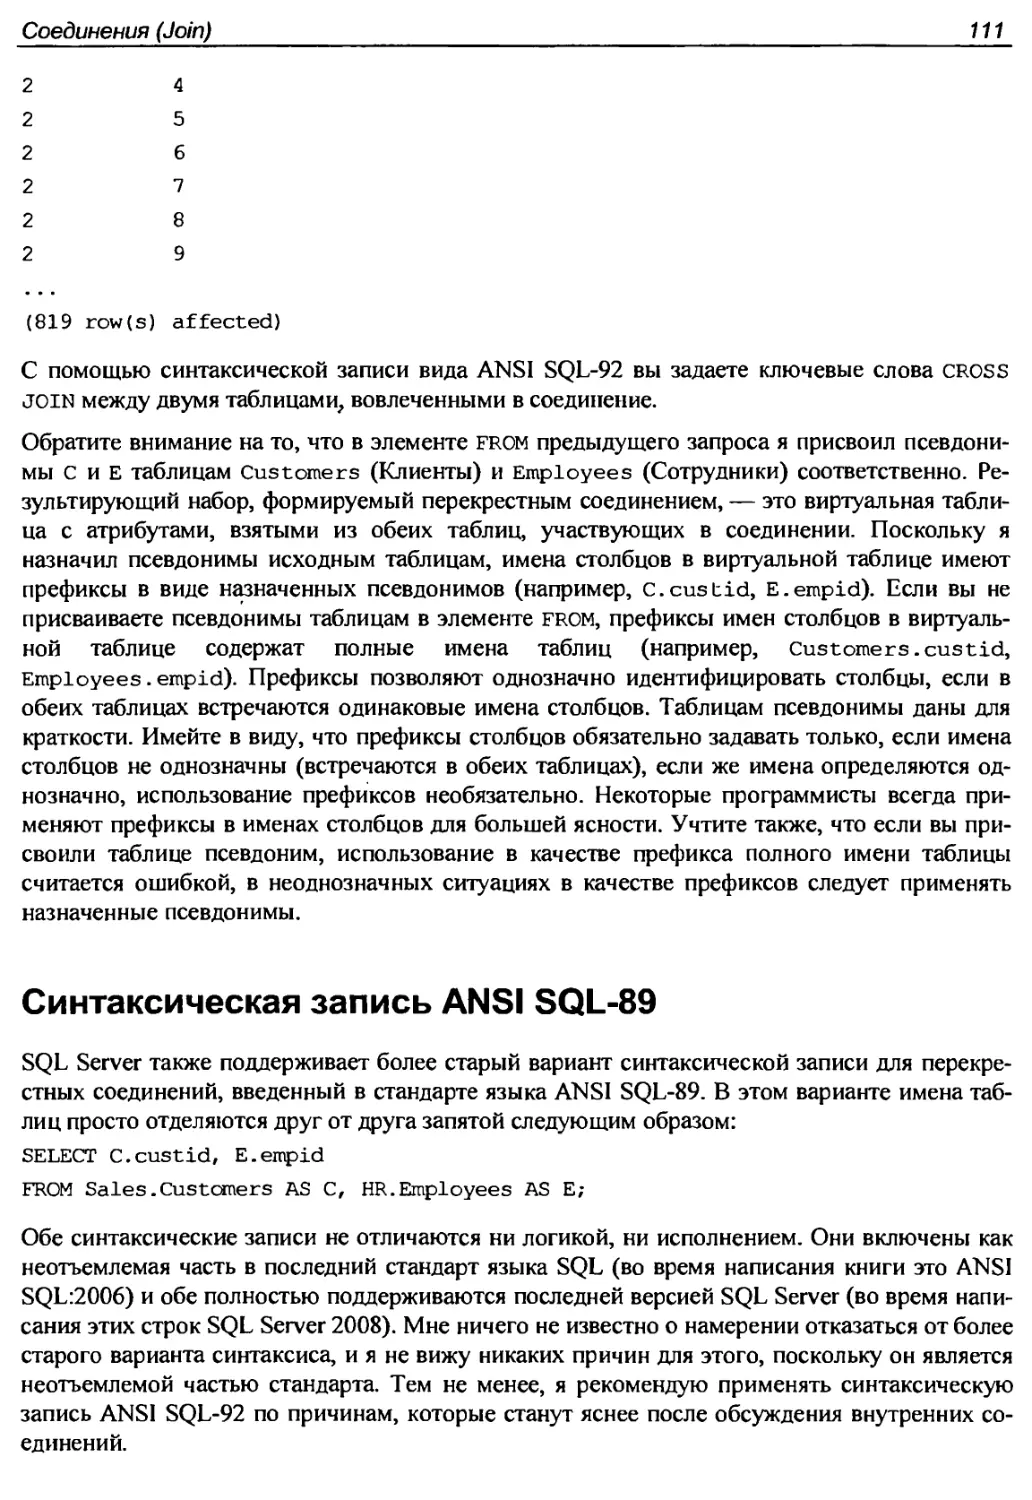 Синтаксическая запись ANSI SQL-89